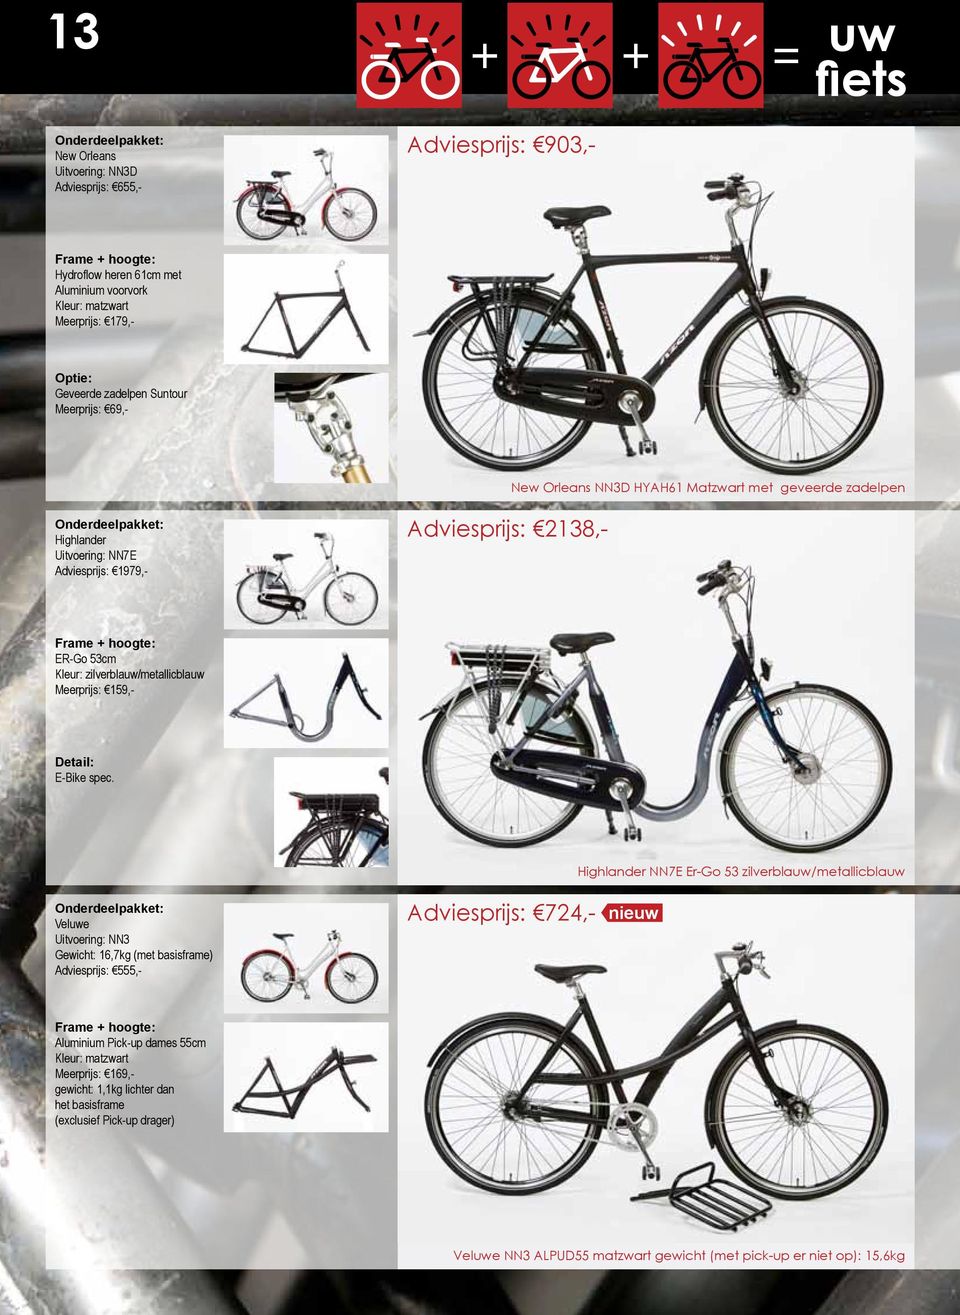 hoogte: ER-Go 53cm Kleur: zilverblauw/metallicblauw Meerprijs: 159,- Detail: E-Bike spec.